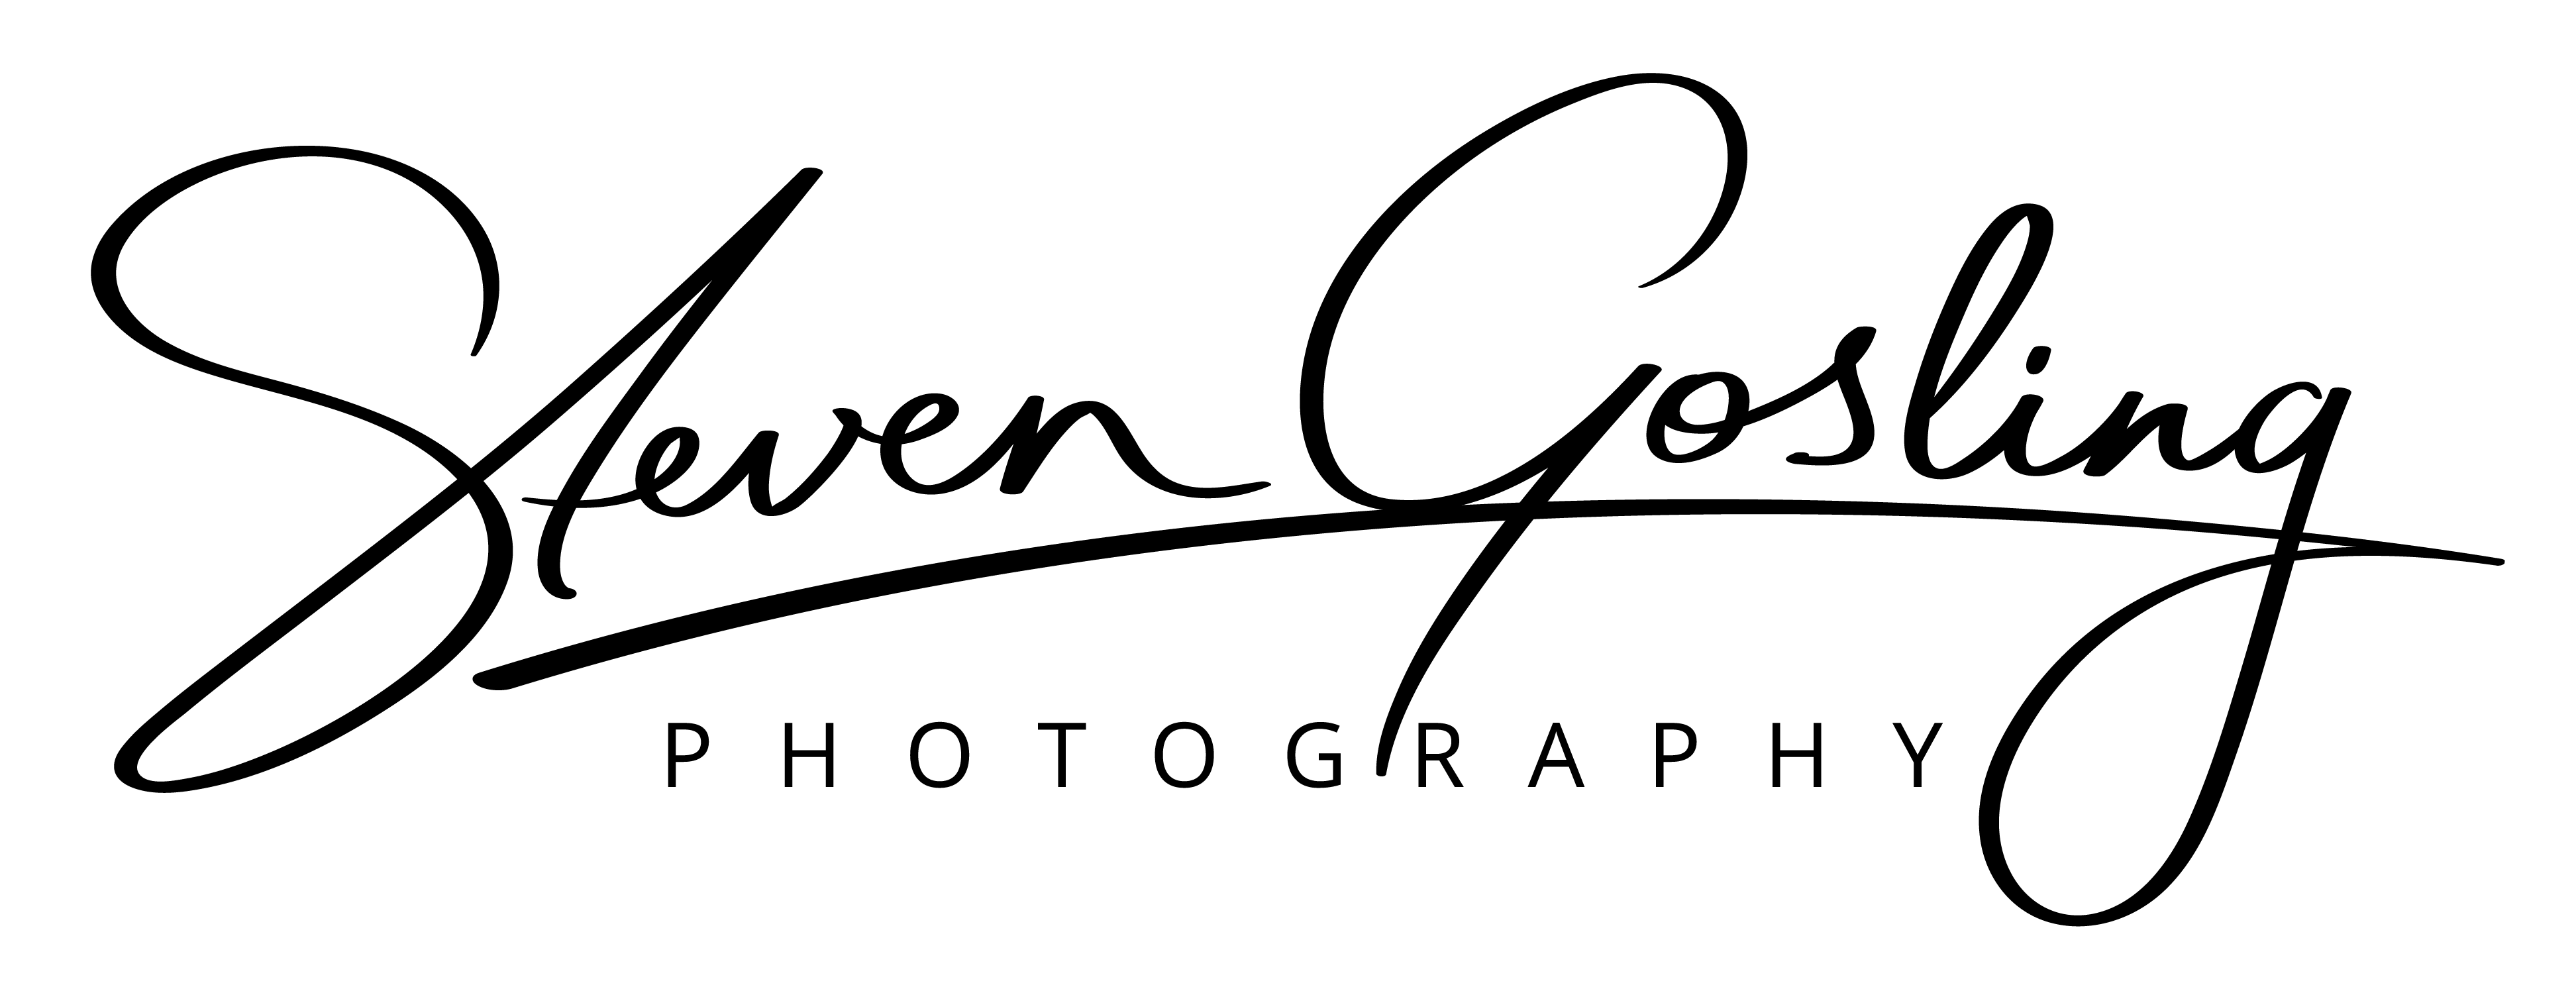 Steven Gosling Photography